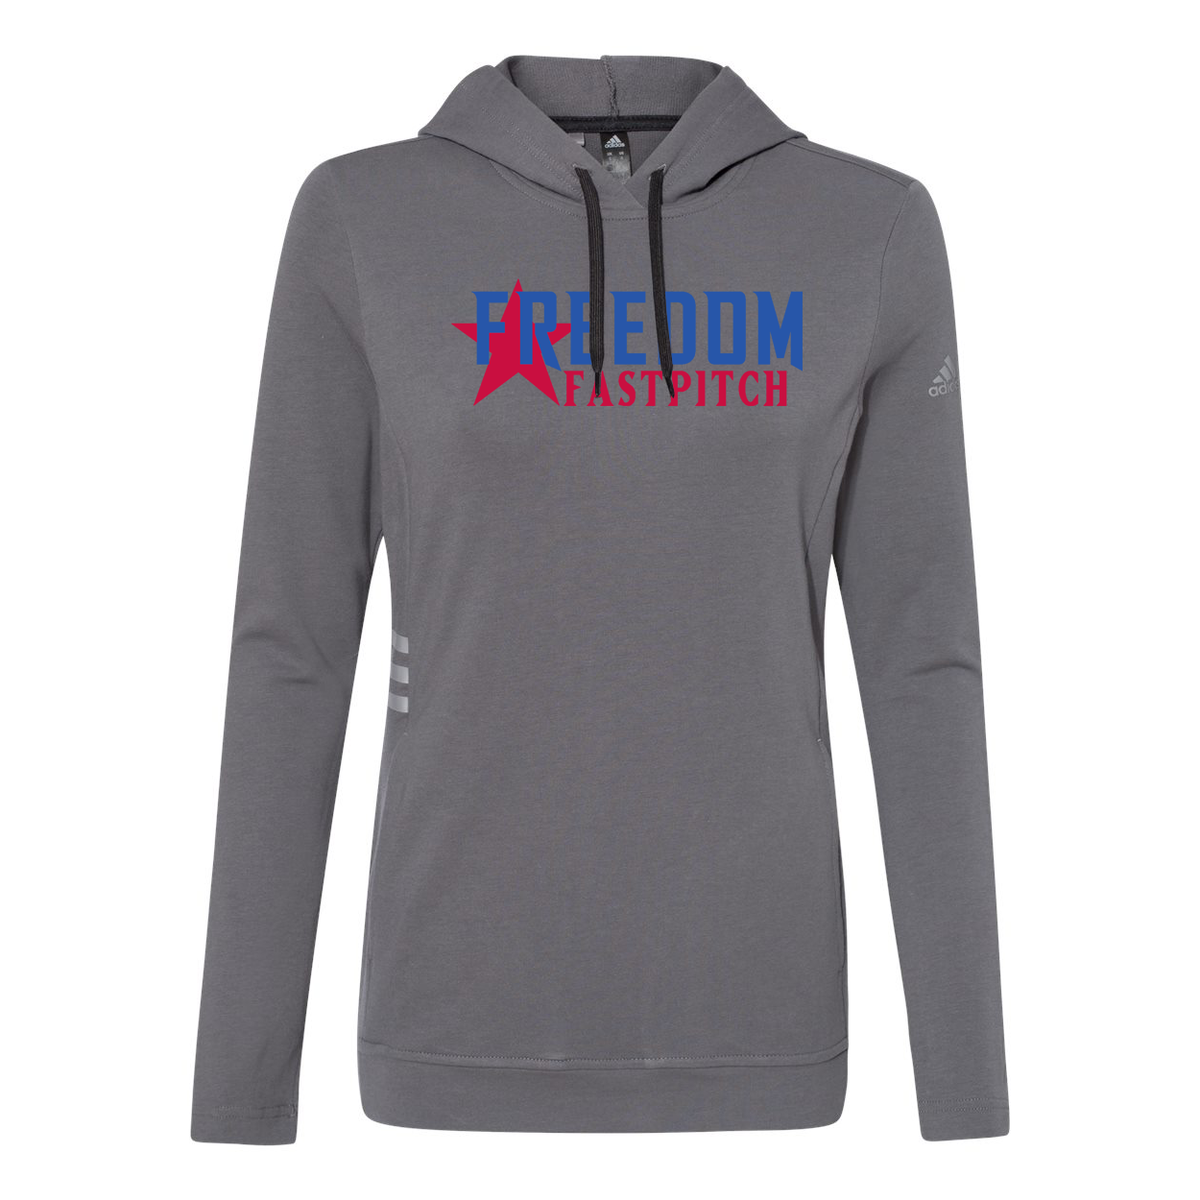 Freedom Fastpitch  Adidas Women's Sweatshirt